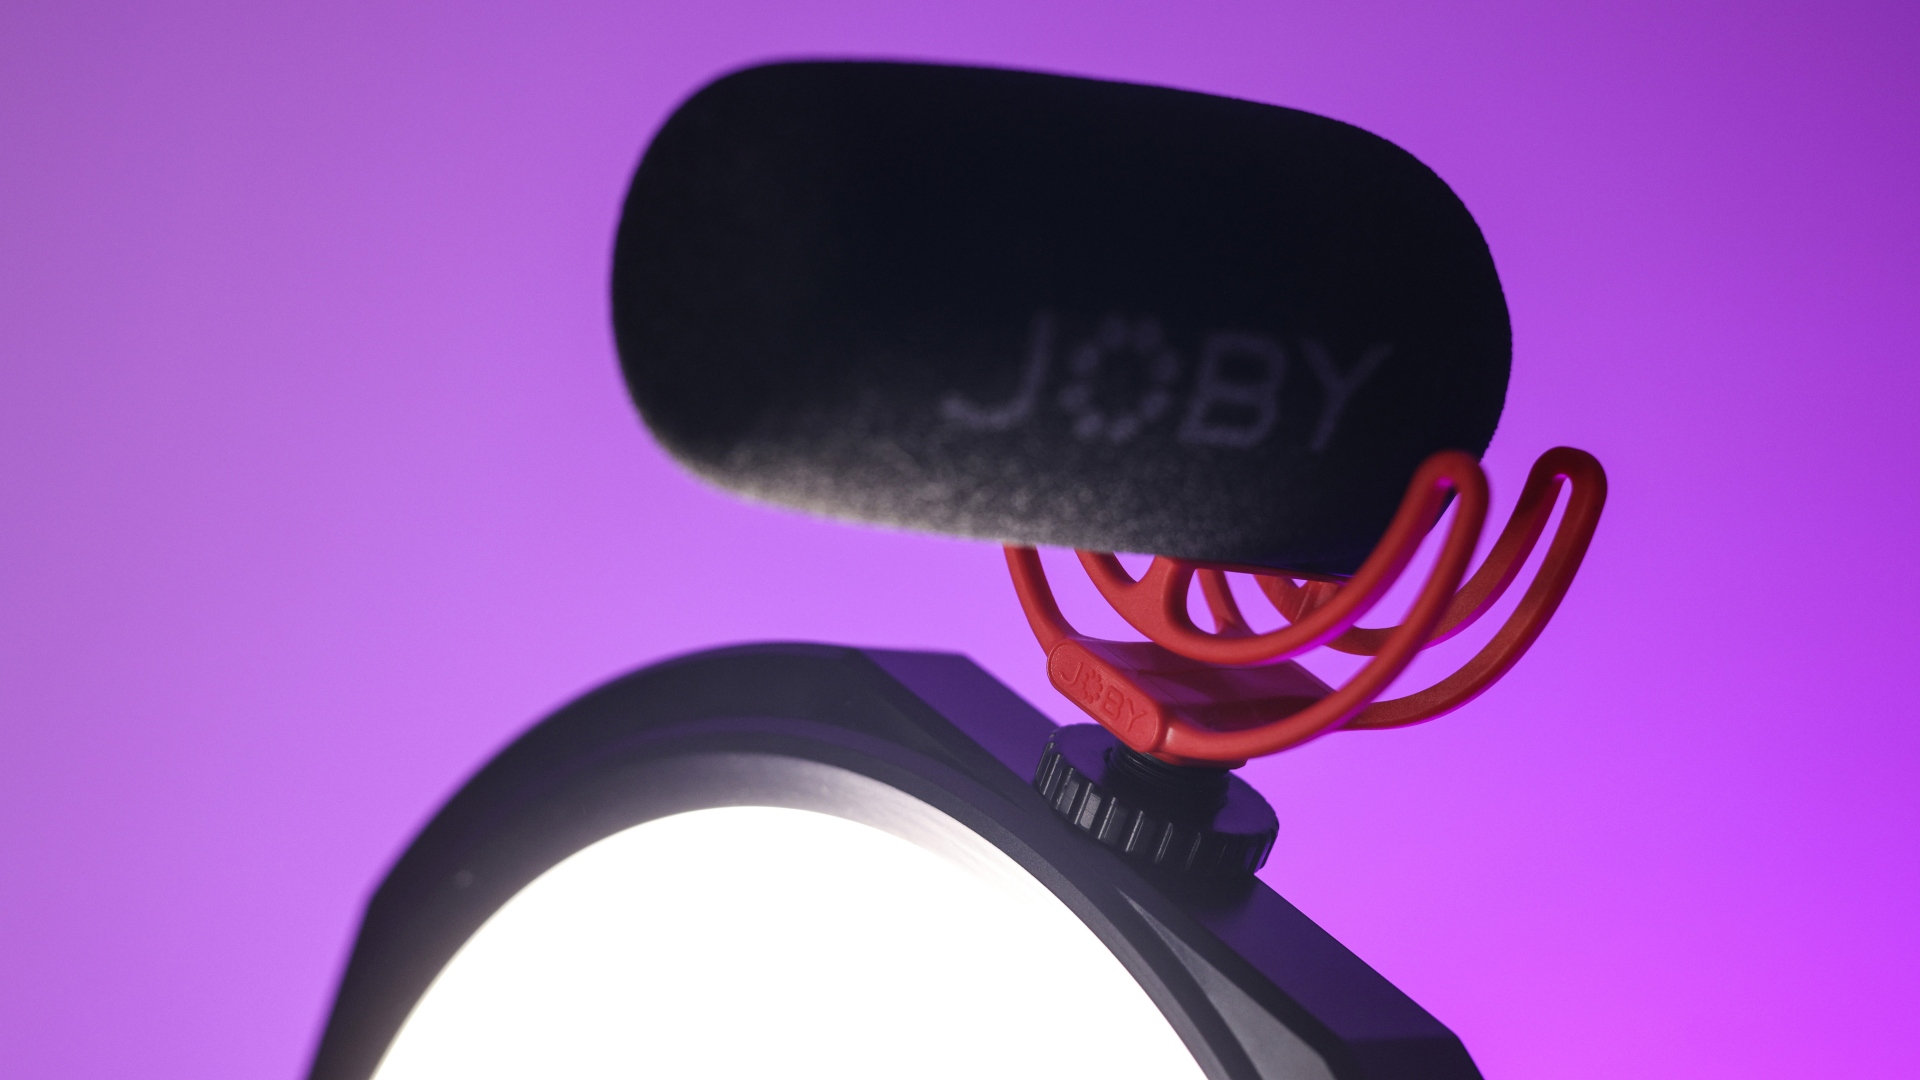 Joby Beamo Studio Key Light inceleme görüntüsü, ışığın üzerinde bir mikrofonu gösteriyor.